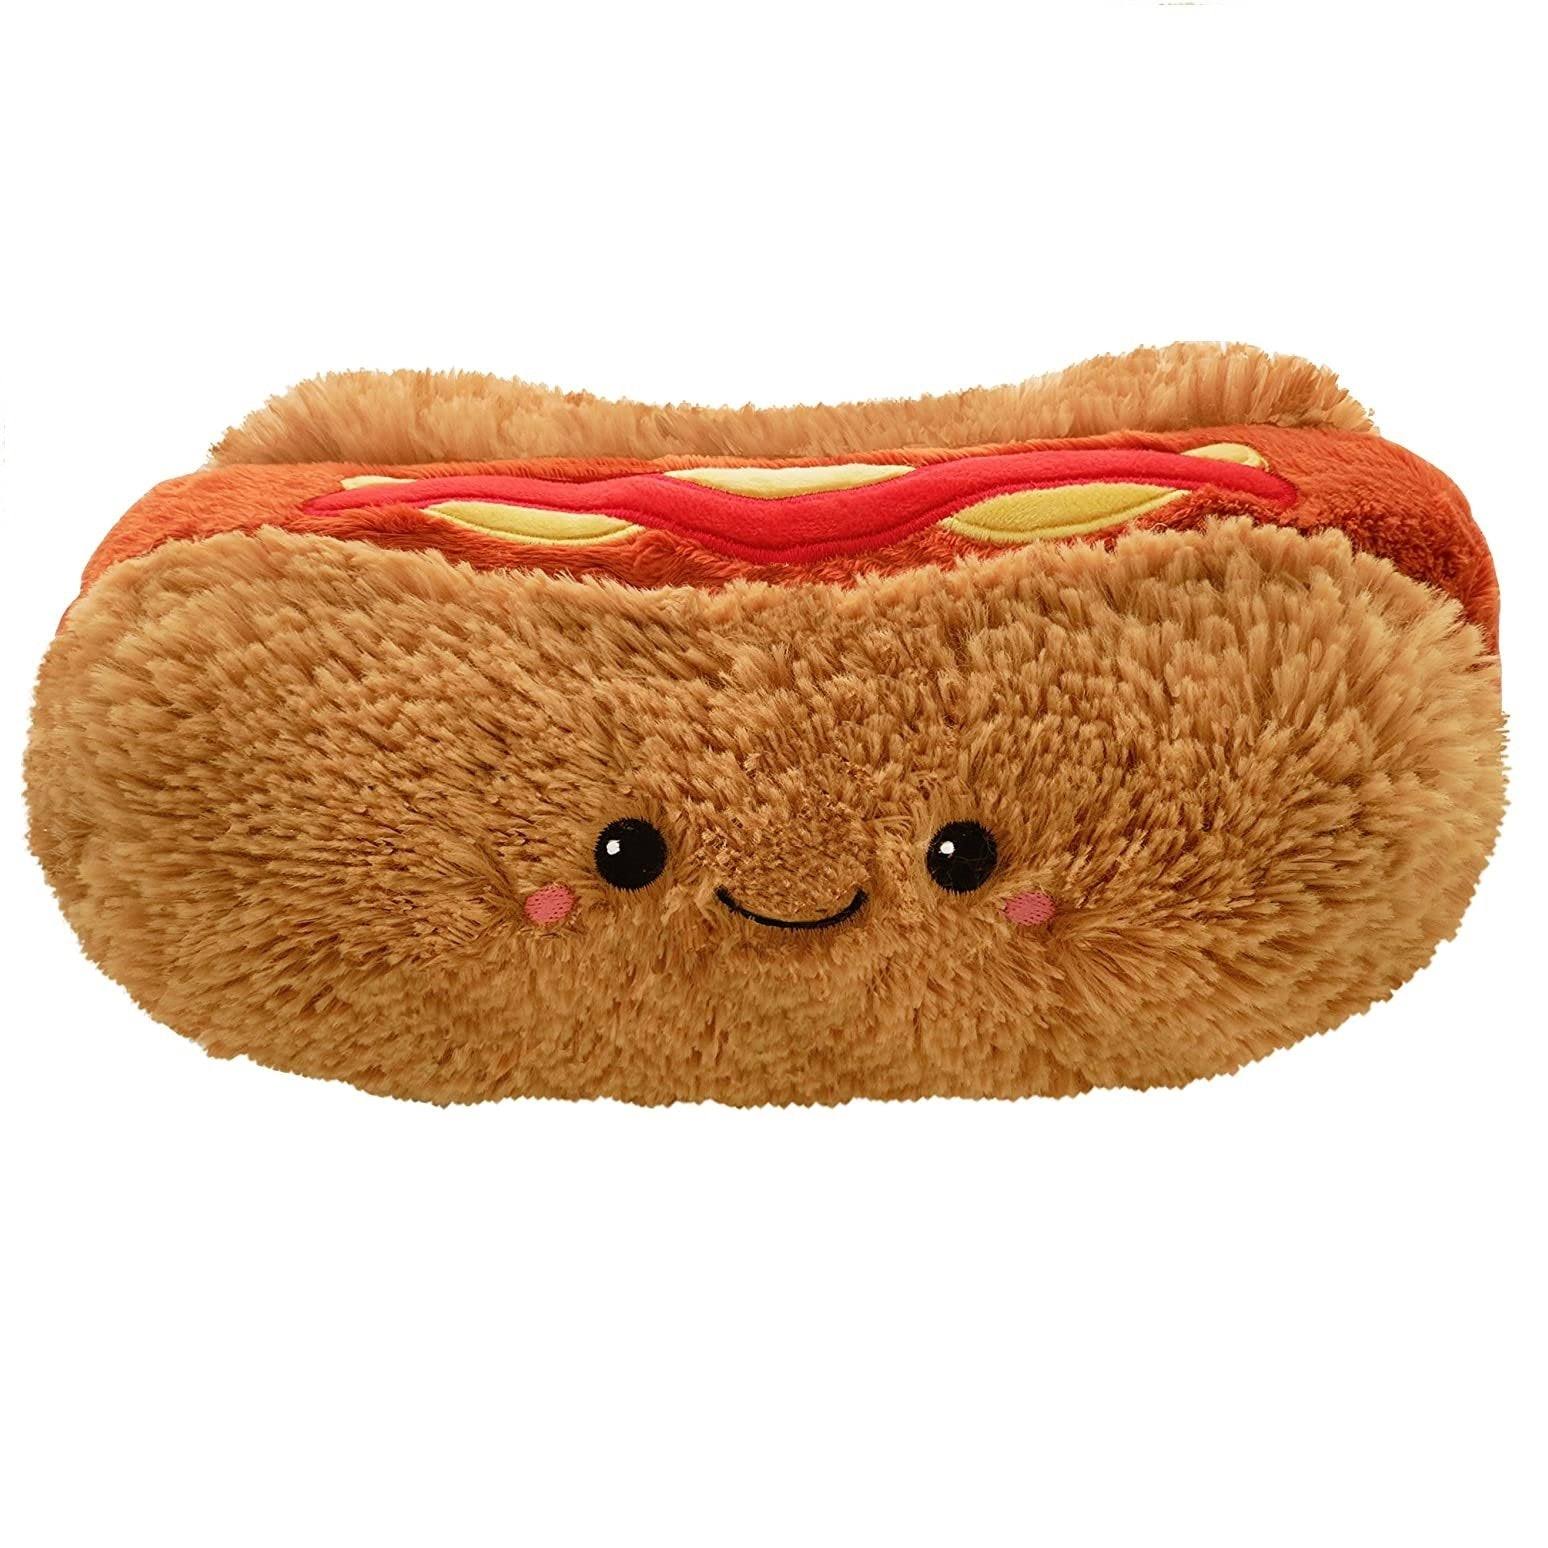 Squishable Hot Dog Mini Plush Toy - 10"